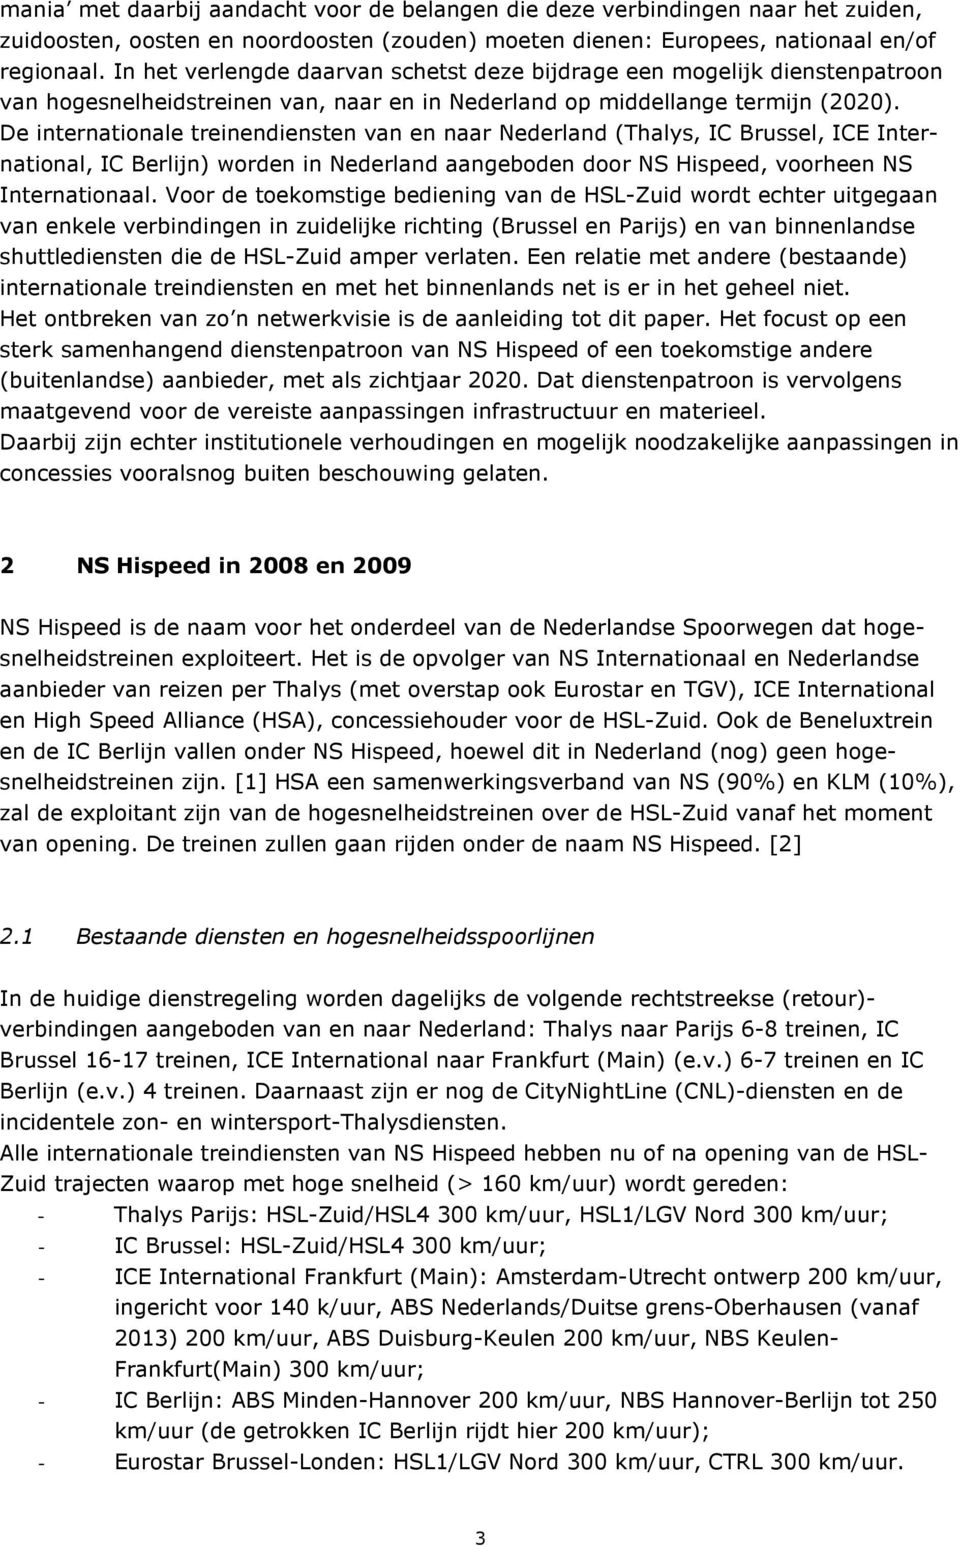 De internationale treinendiensten van en naar Nederland (Thalys, IC Brussel, ICE International, IC Berlijn) worden in Nederland aangeboden door NS Hispeed, voorheen NS Internationaal.